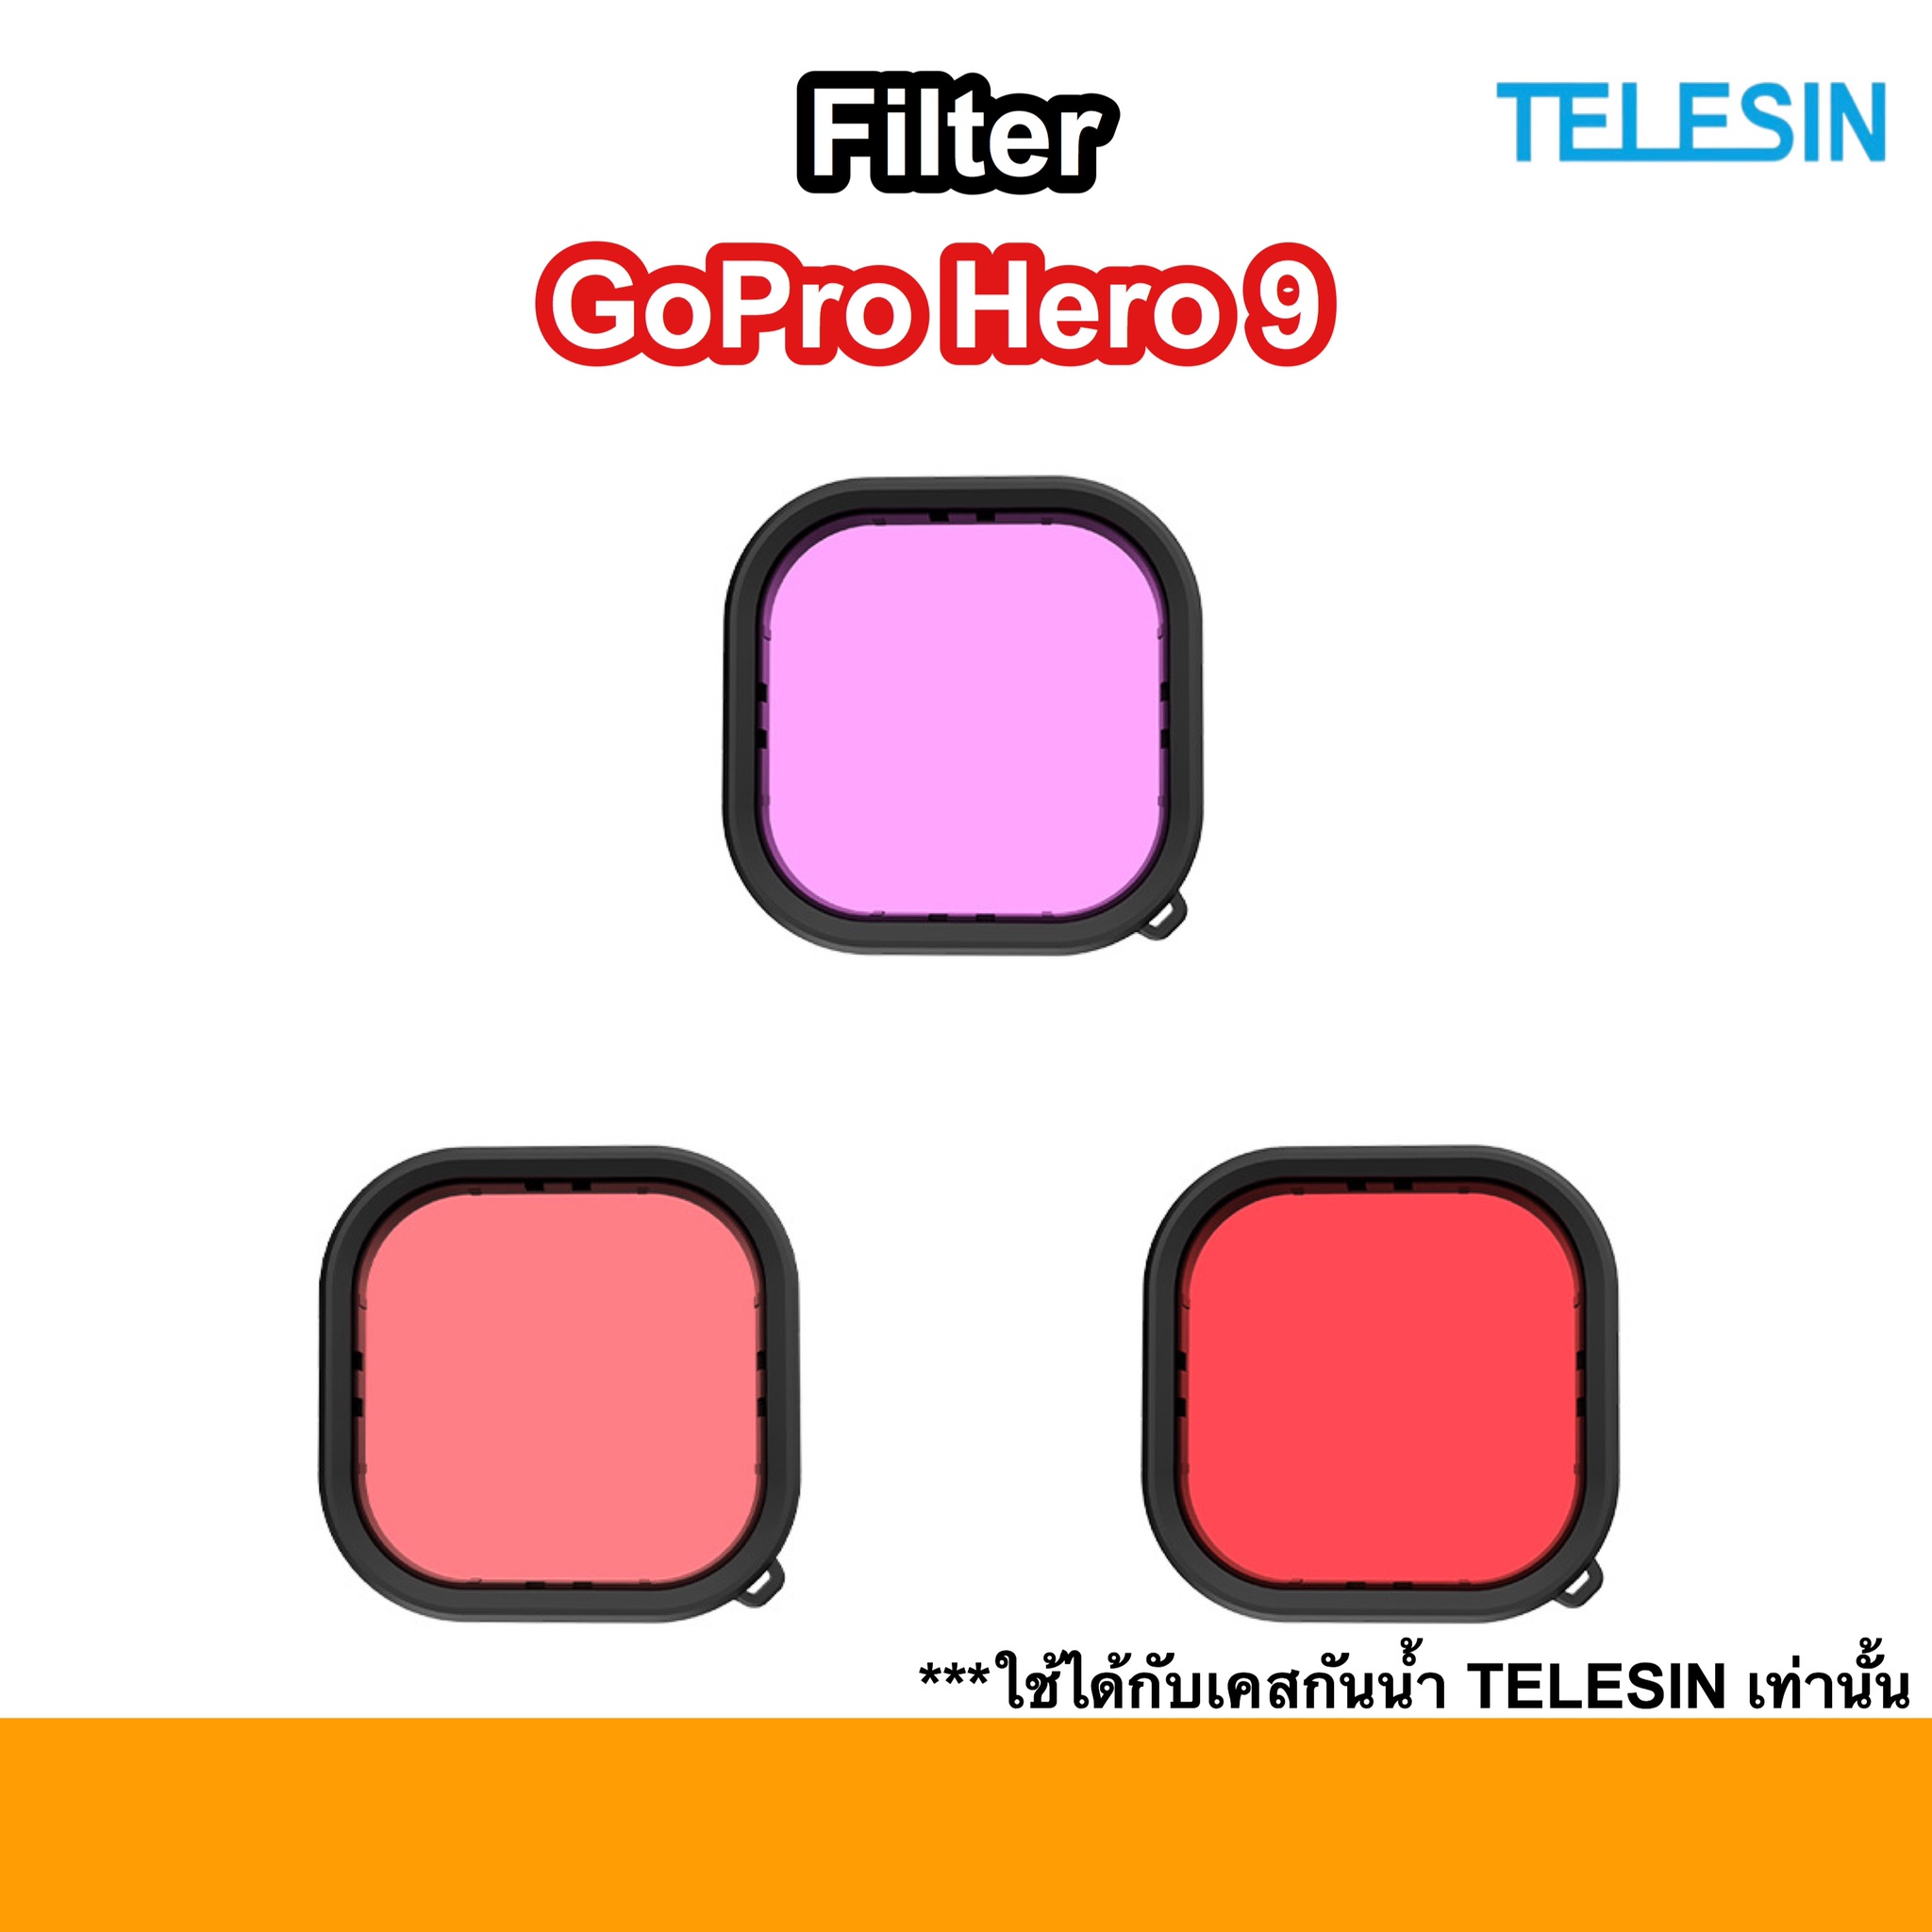 TELESIN Filter 3สี ถ่ายใต้น้ำ Gopro Hero 9 ใช้กับ Housing gopro9 Telesin เท่านั้น ใต้น้ำ 3 สี ถ่าย ดำน้ำ Hero9 ฟิลเตอร์